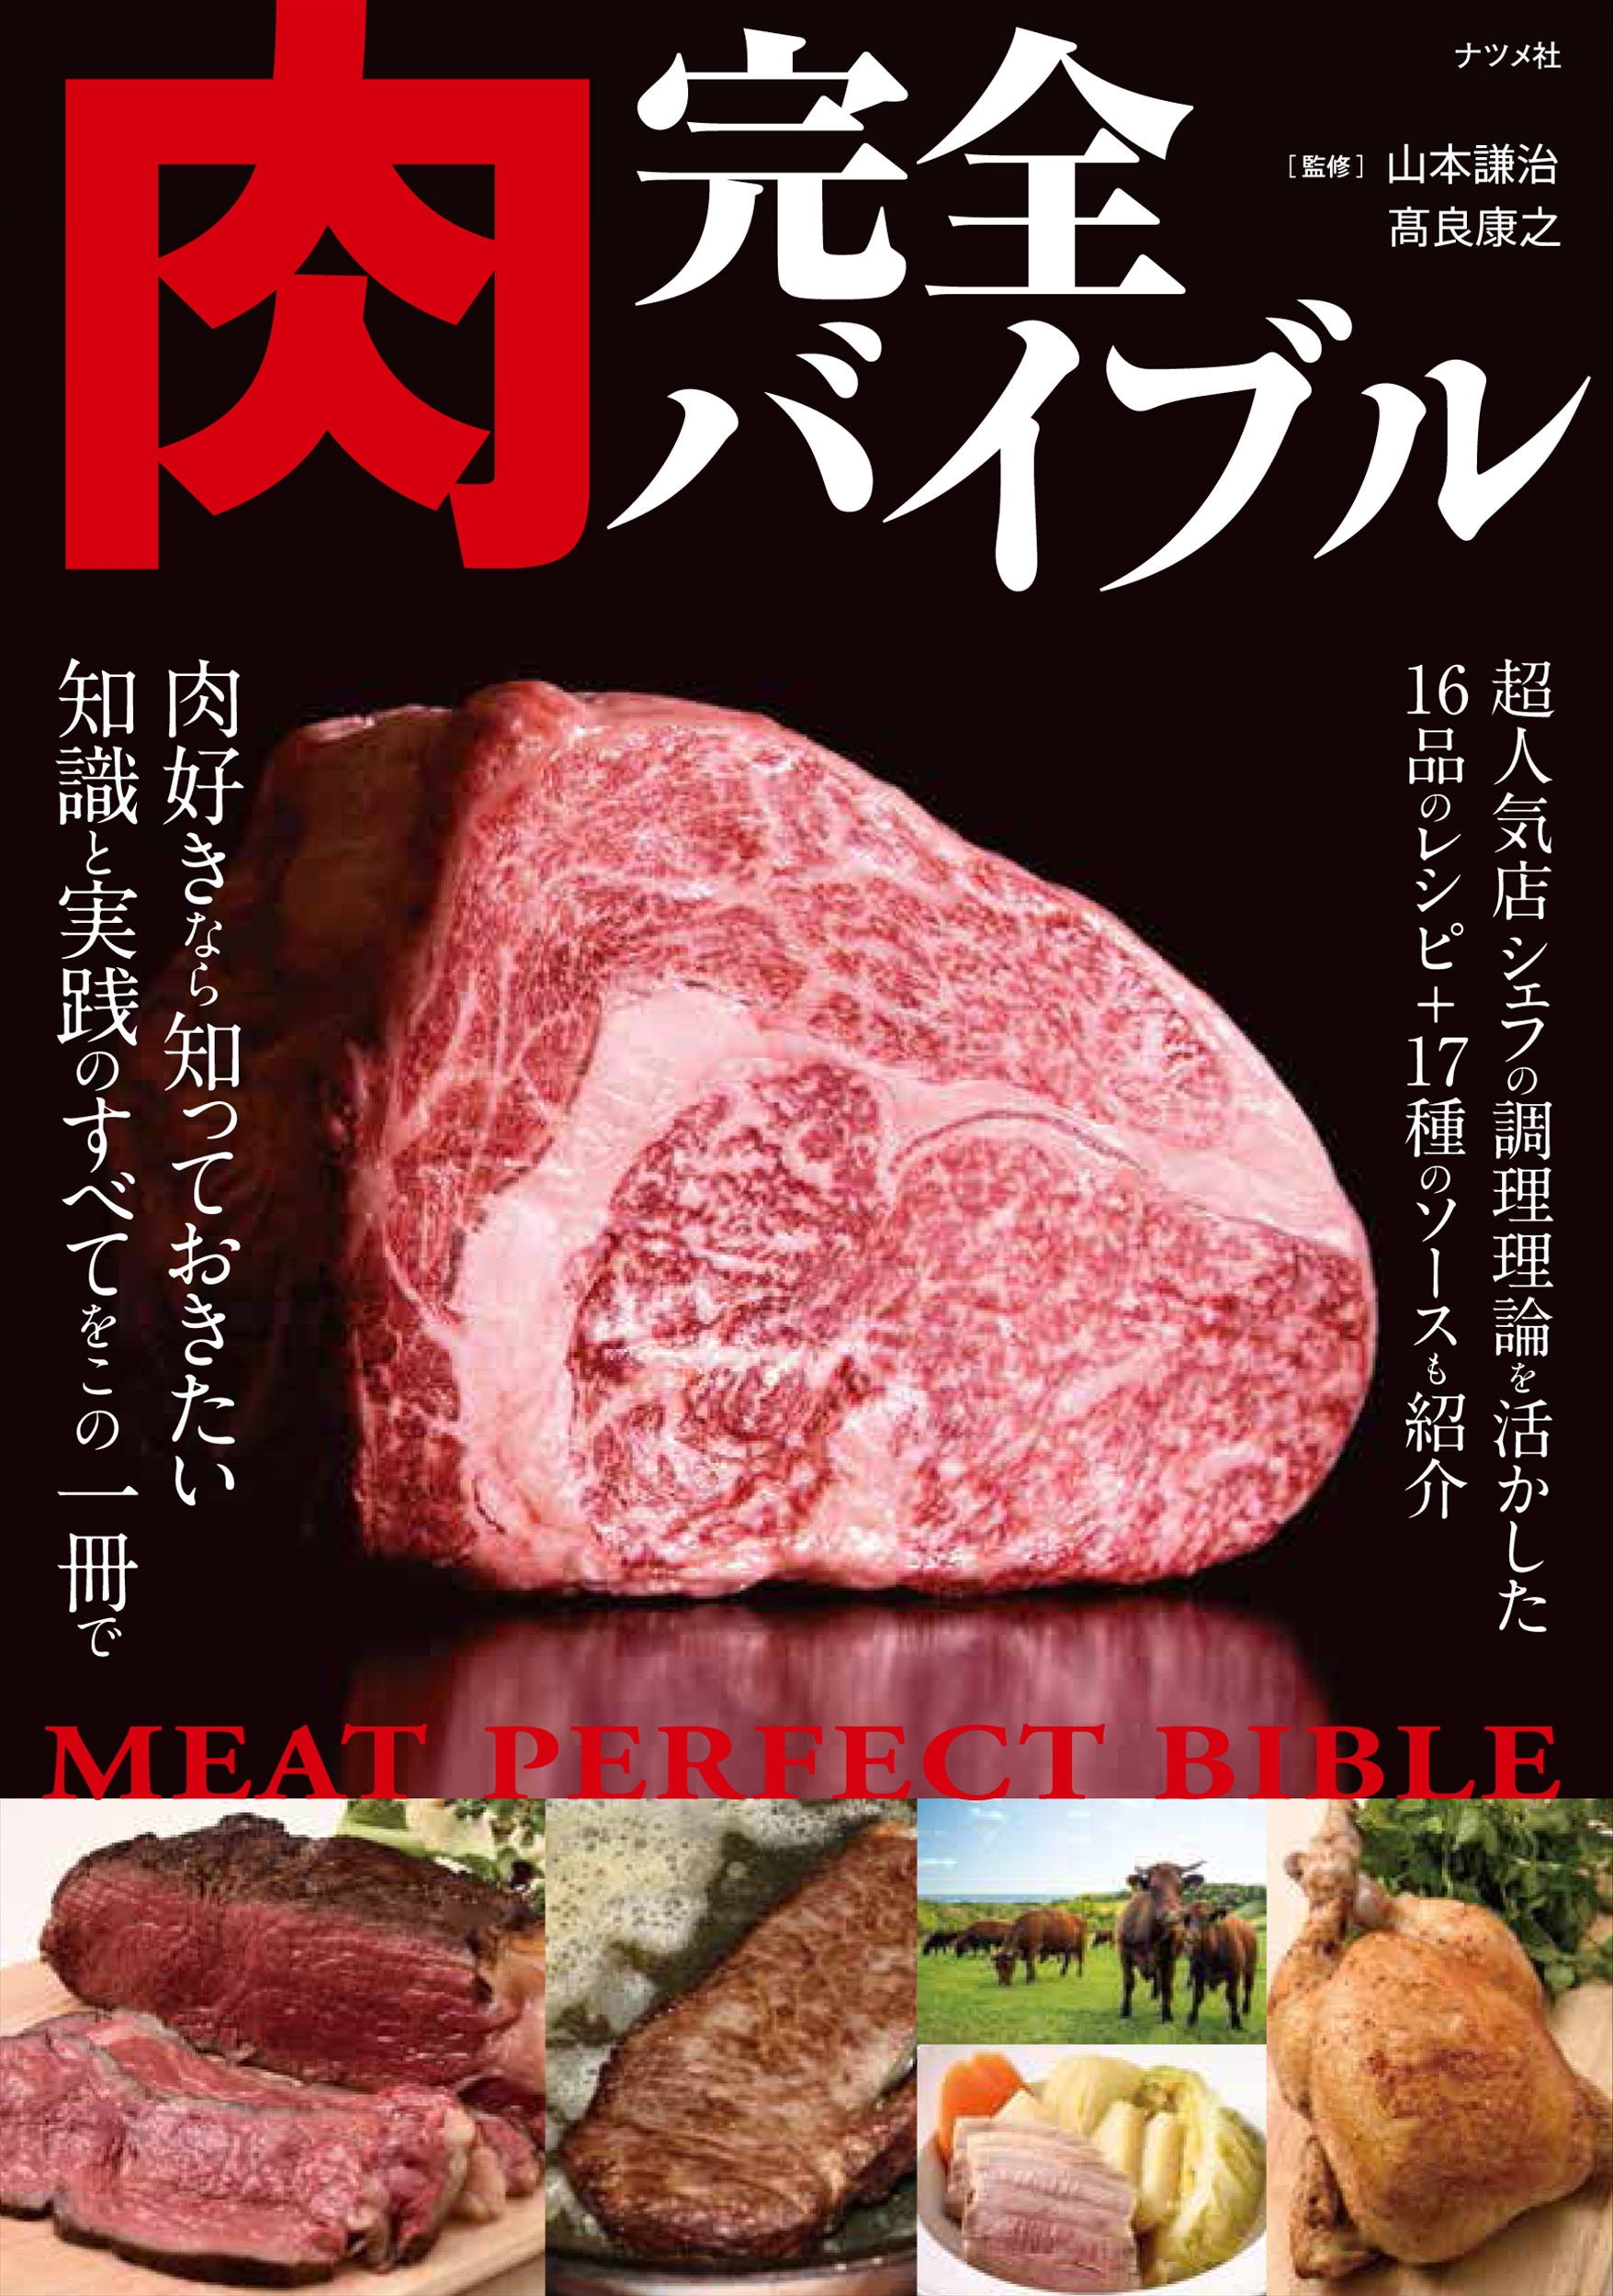 肉完全バイブルの商品画像